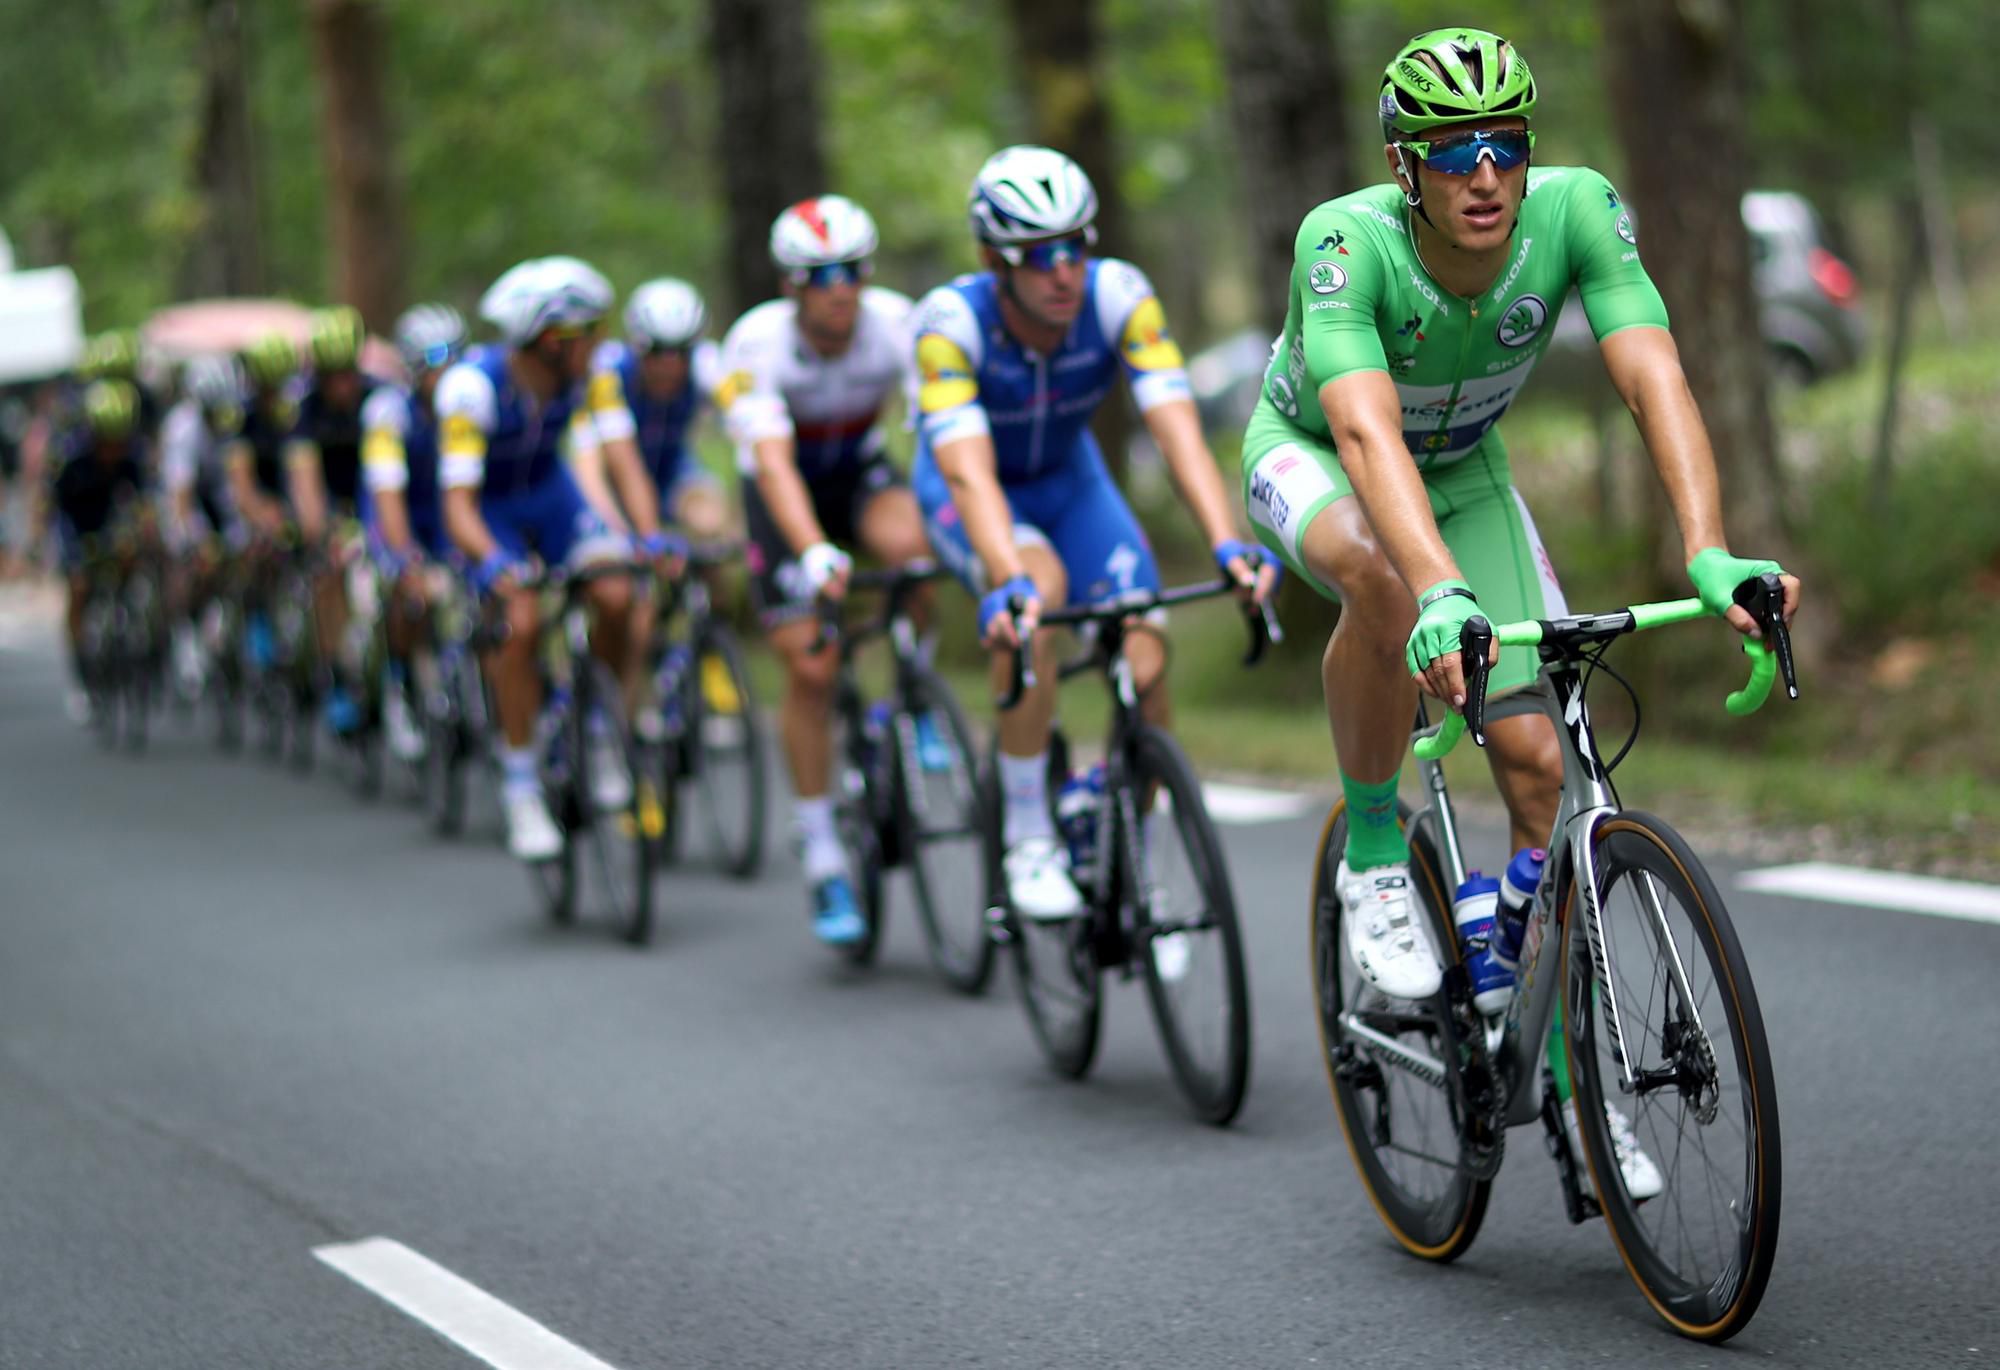 Marcel Kittel v zelenom drese Tour de France na čele skupiny jazdcov.